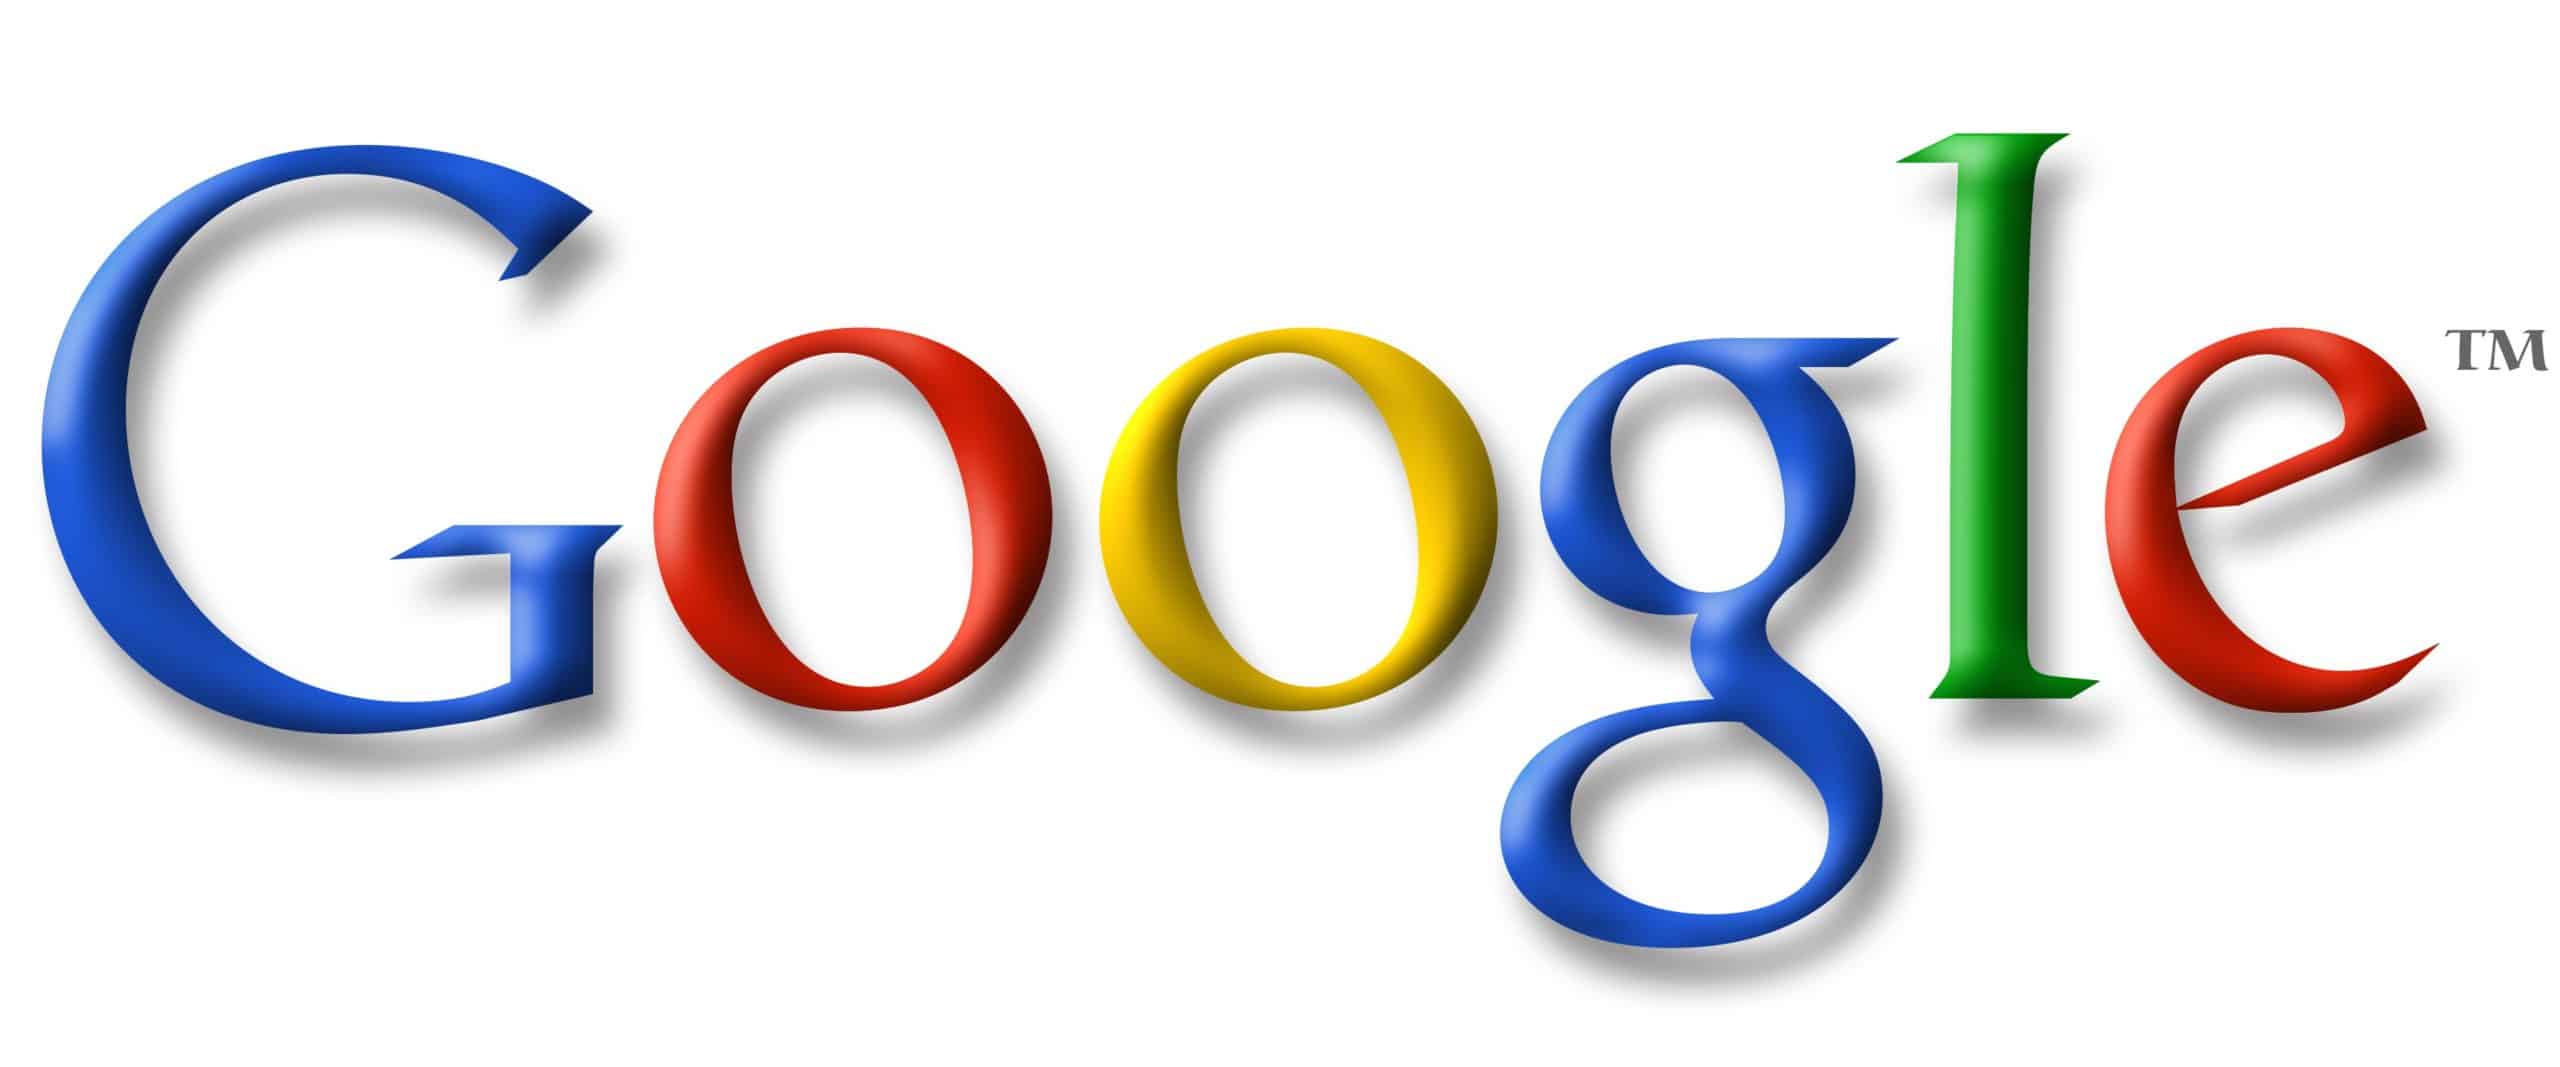 google logo1 scaled